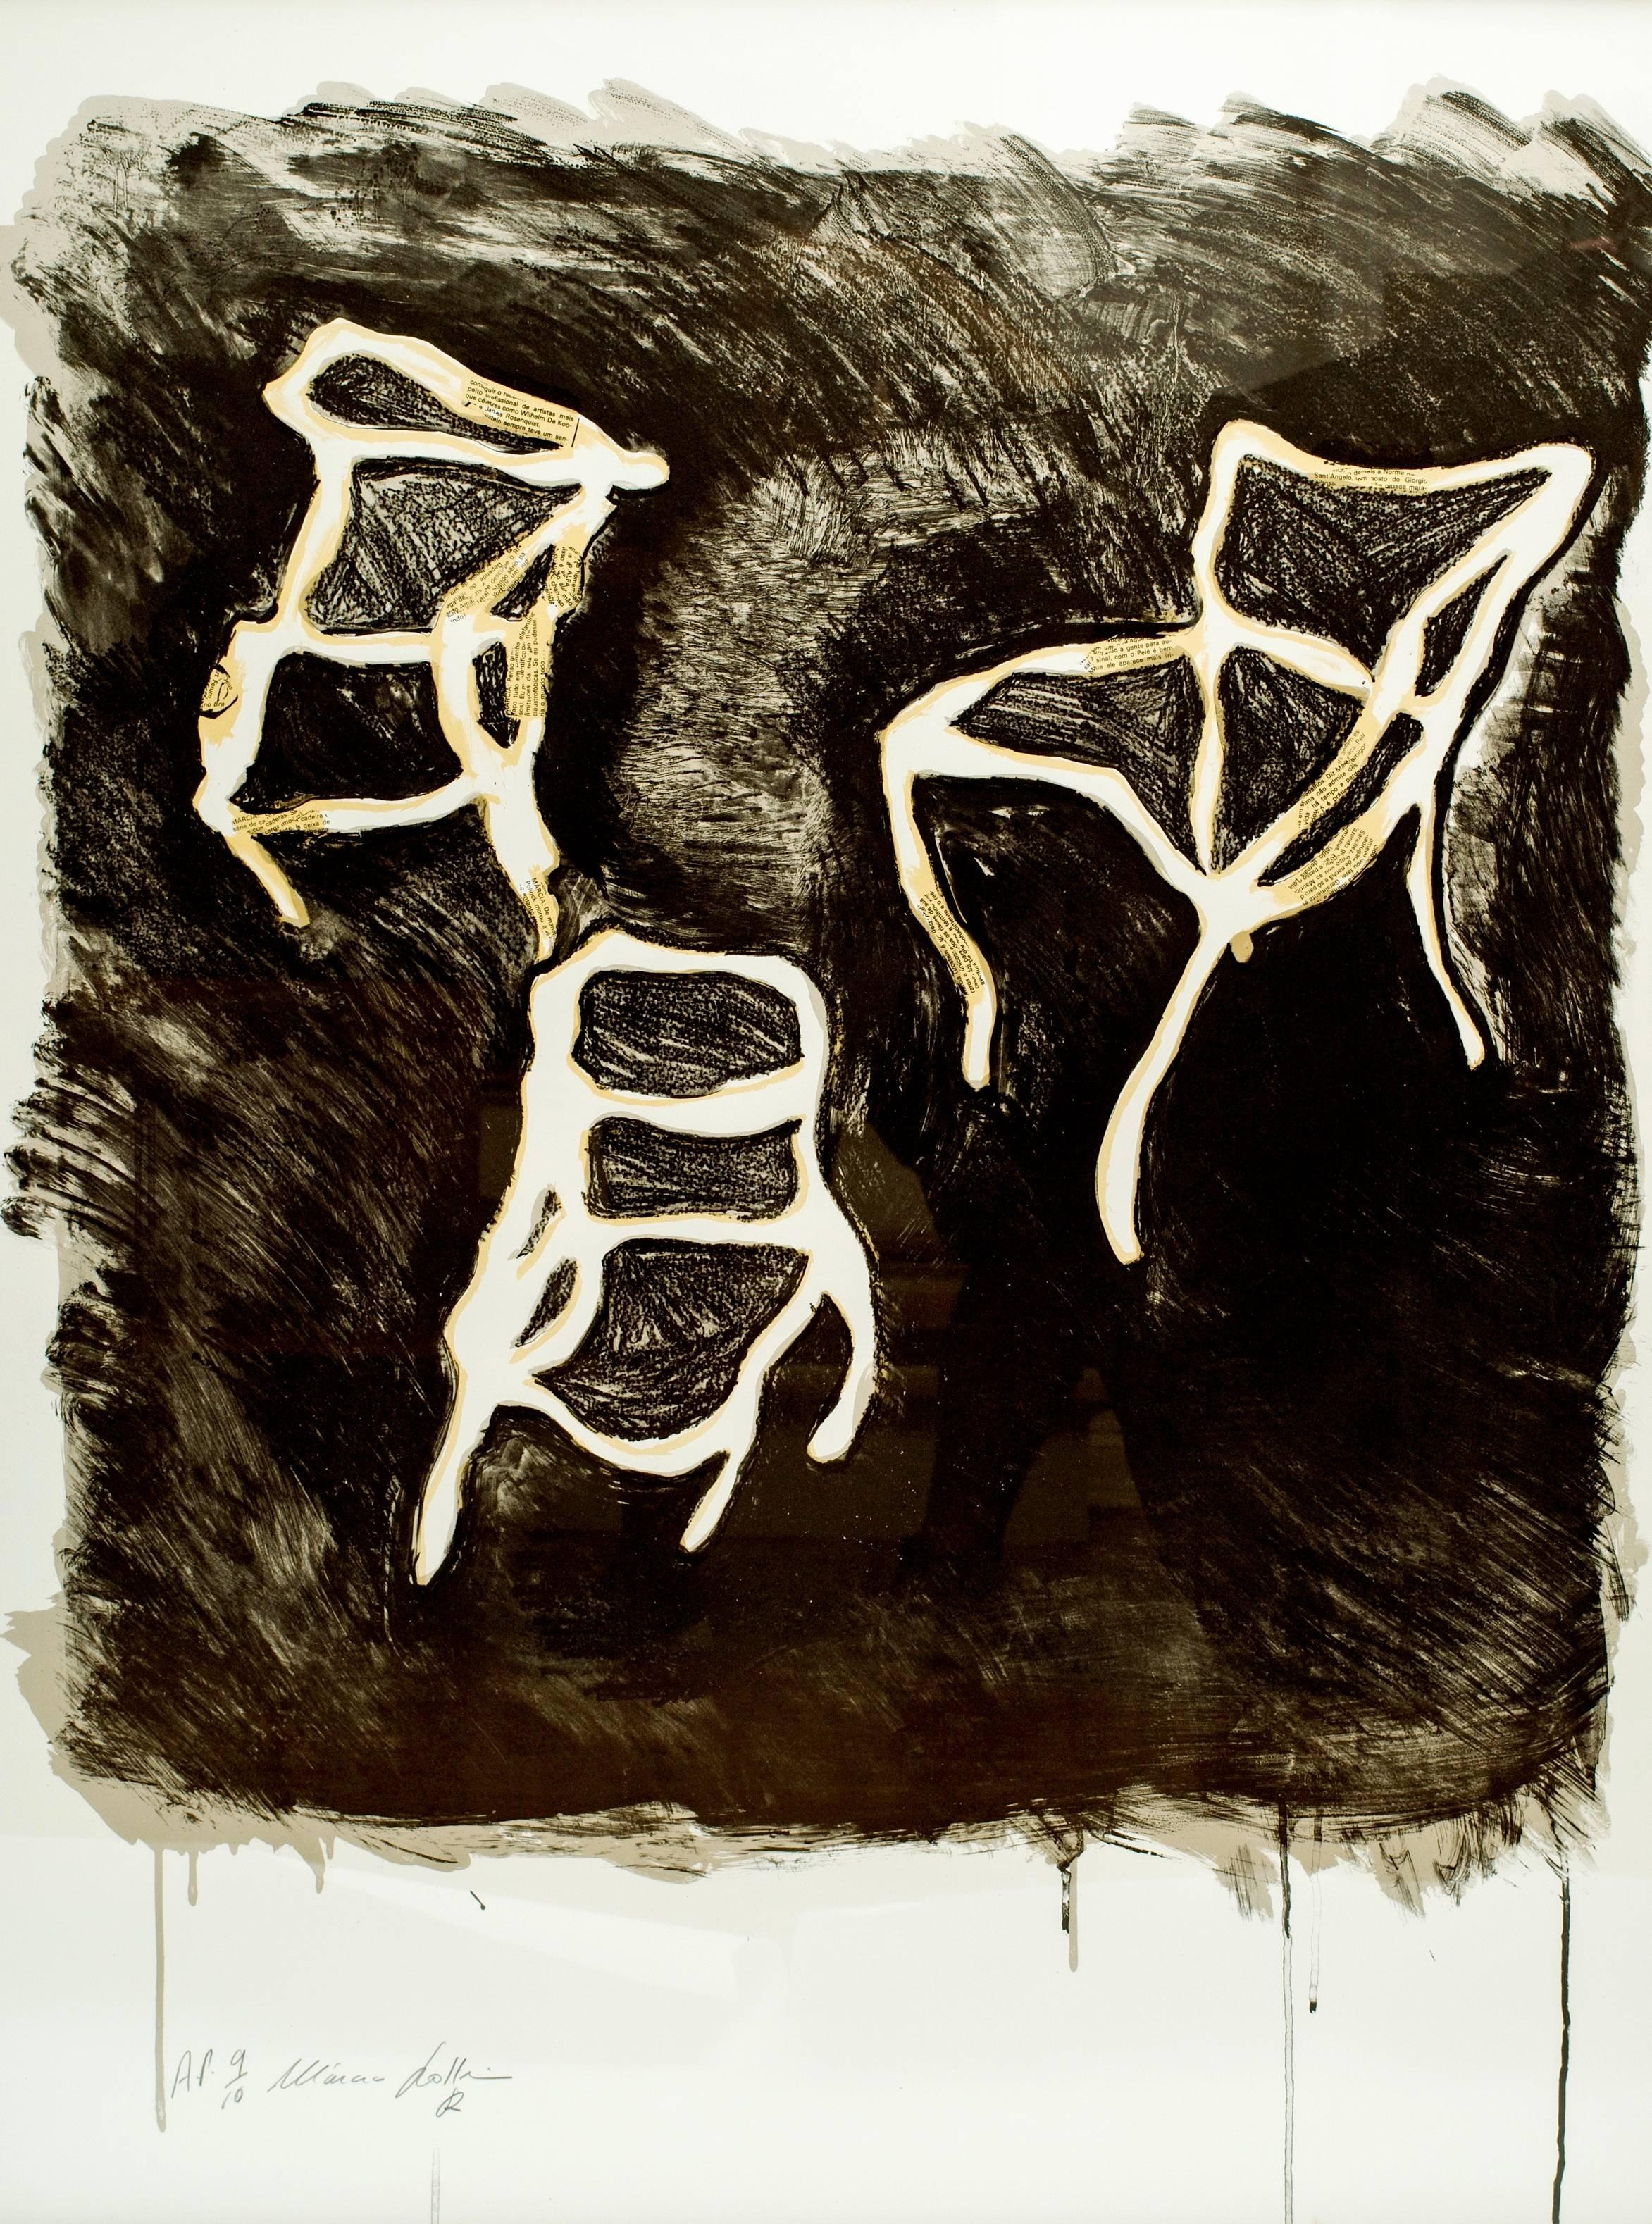 Fabelhafter und auffälliger Stuhl-Siebdruck der börsennotierten Künstlerin Marcia Grostein (brasilianisch-amerikanisch, geboren 1949) von drei abstrakten Stühlen mit einer Zeitungspapier-Collage, die Künstlernamen wie Willem de Kooning und James